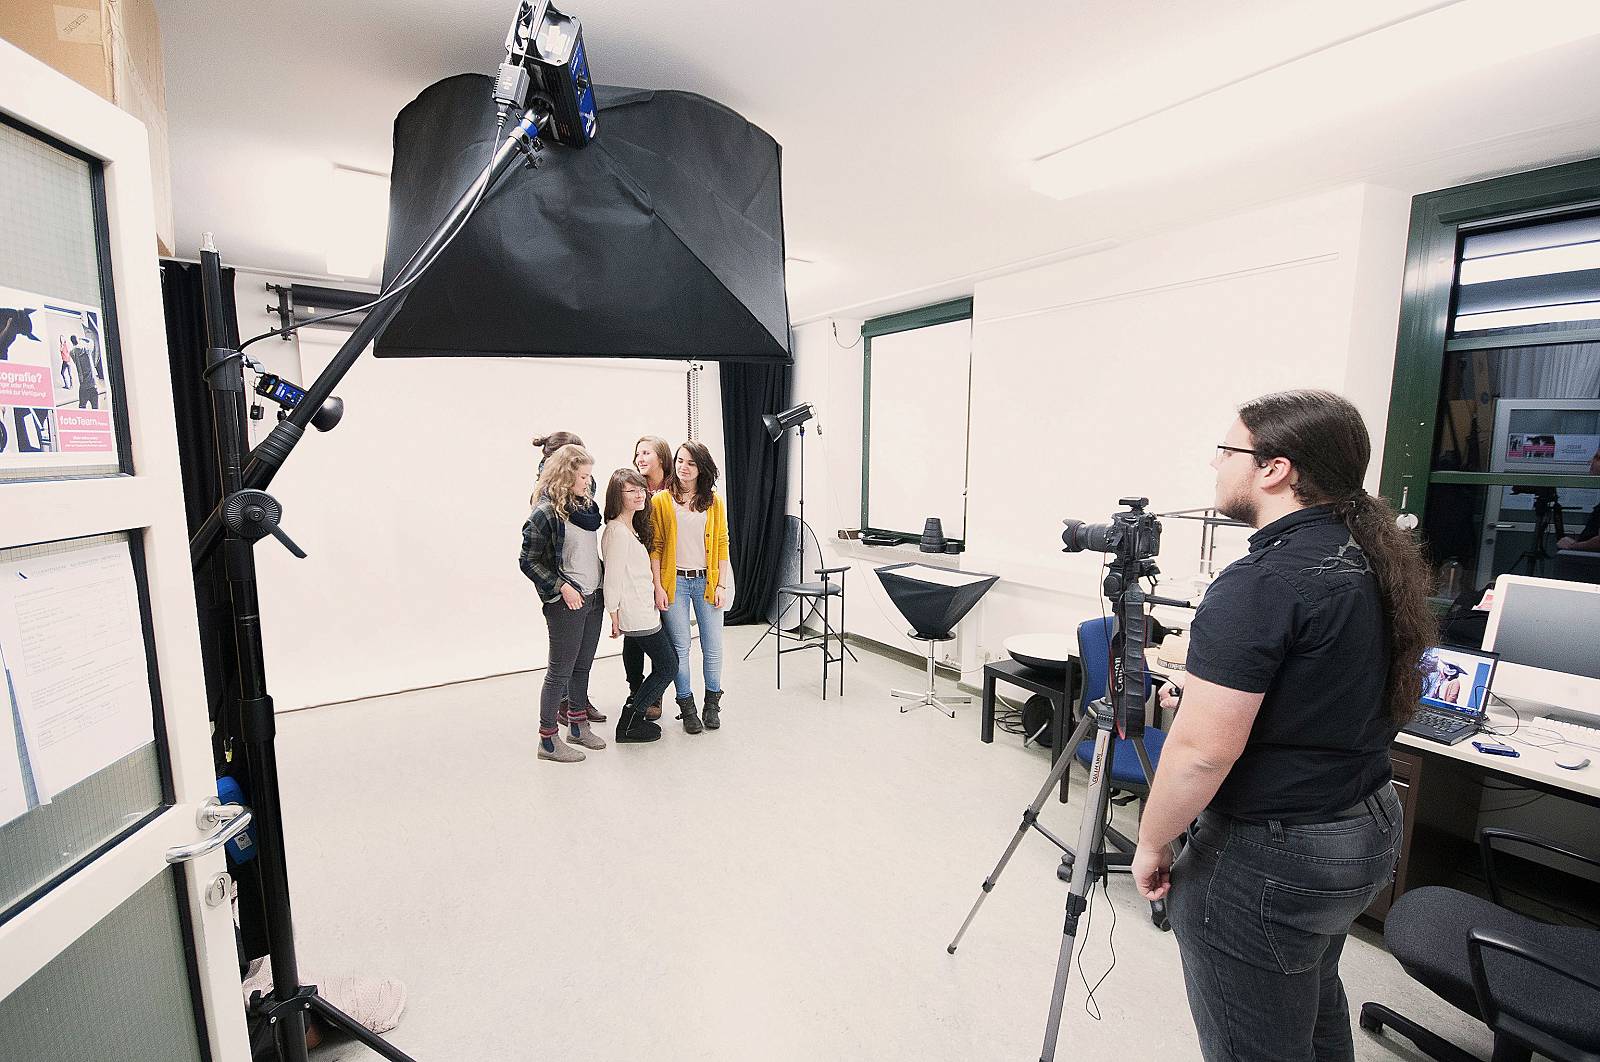 Ein Fotoshooting in einem professionellen, gut ausgestattenen Fotostudio mit verschiedenen Lampen, einer Kameras auf einem Stativen und einem Computer-Tisch. Eine Gruppe von fünf jungen Mädels steht vor einer weißen Leinwand und lässt sich von einem jungen Mann fotografieren.